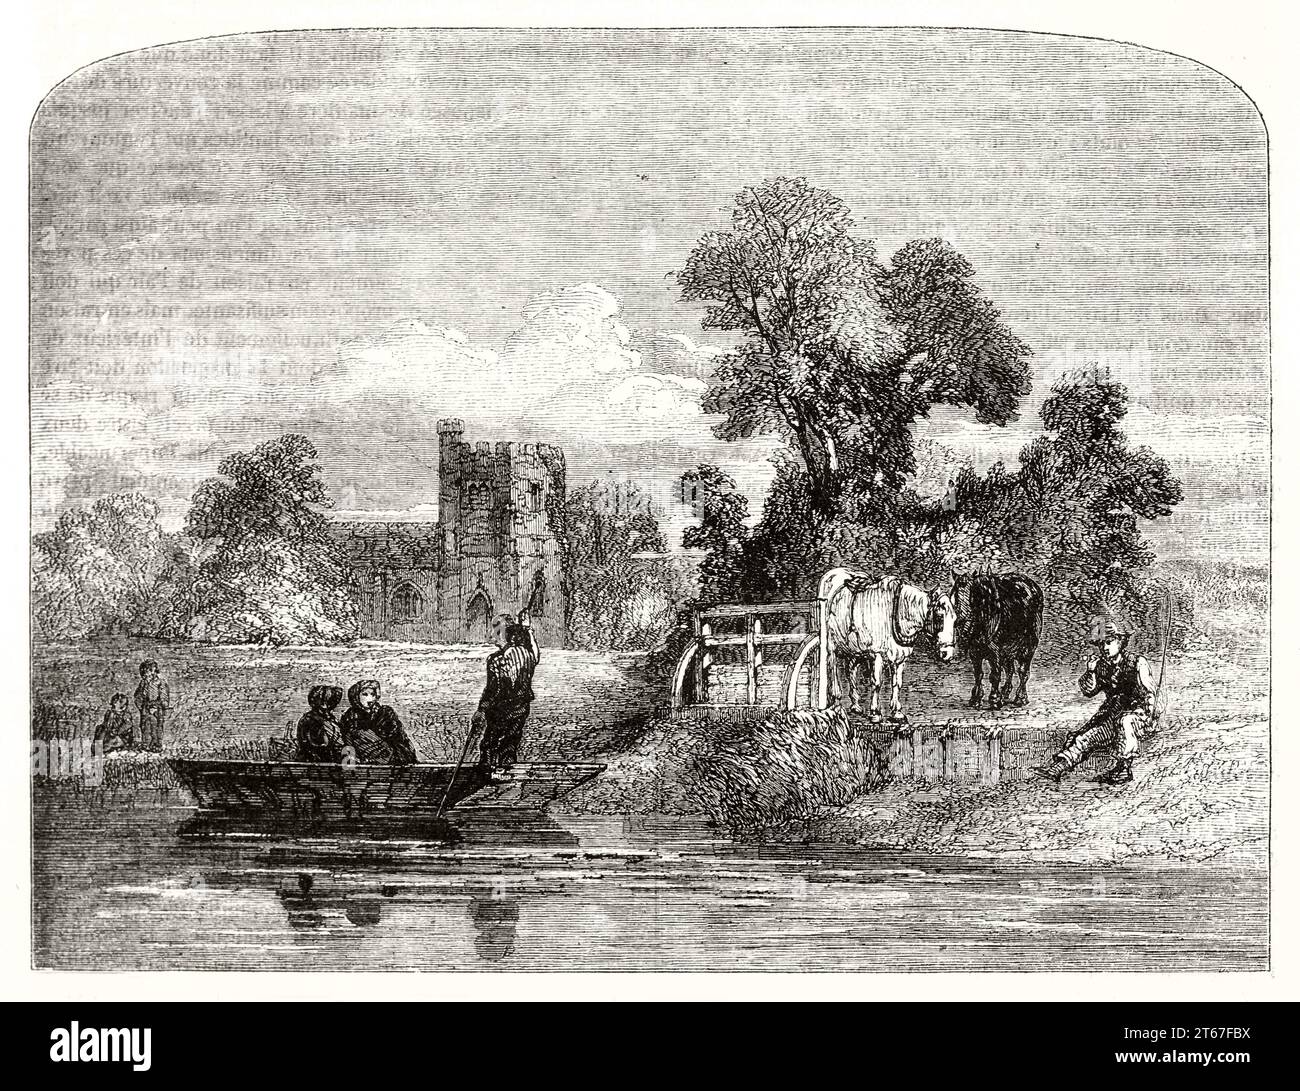 Vue ancienne ou rives de la Tamise, Angleterre. Par Dodgson, publ. Sur magasin pittoresque, Paris, 1851 Banque D'Images